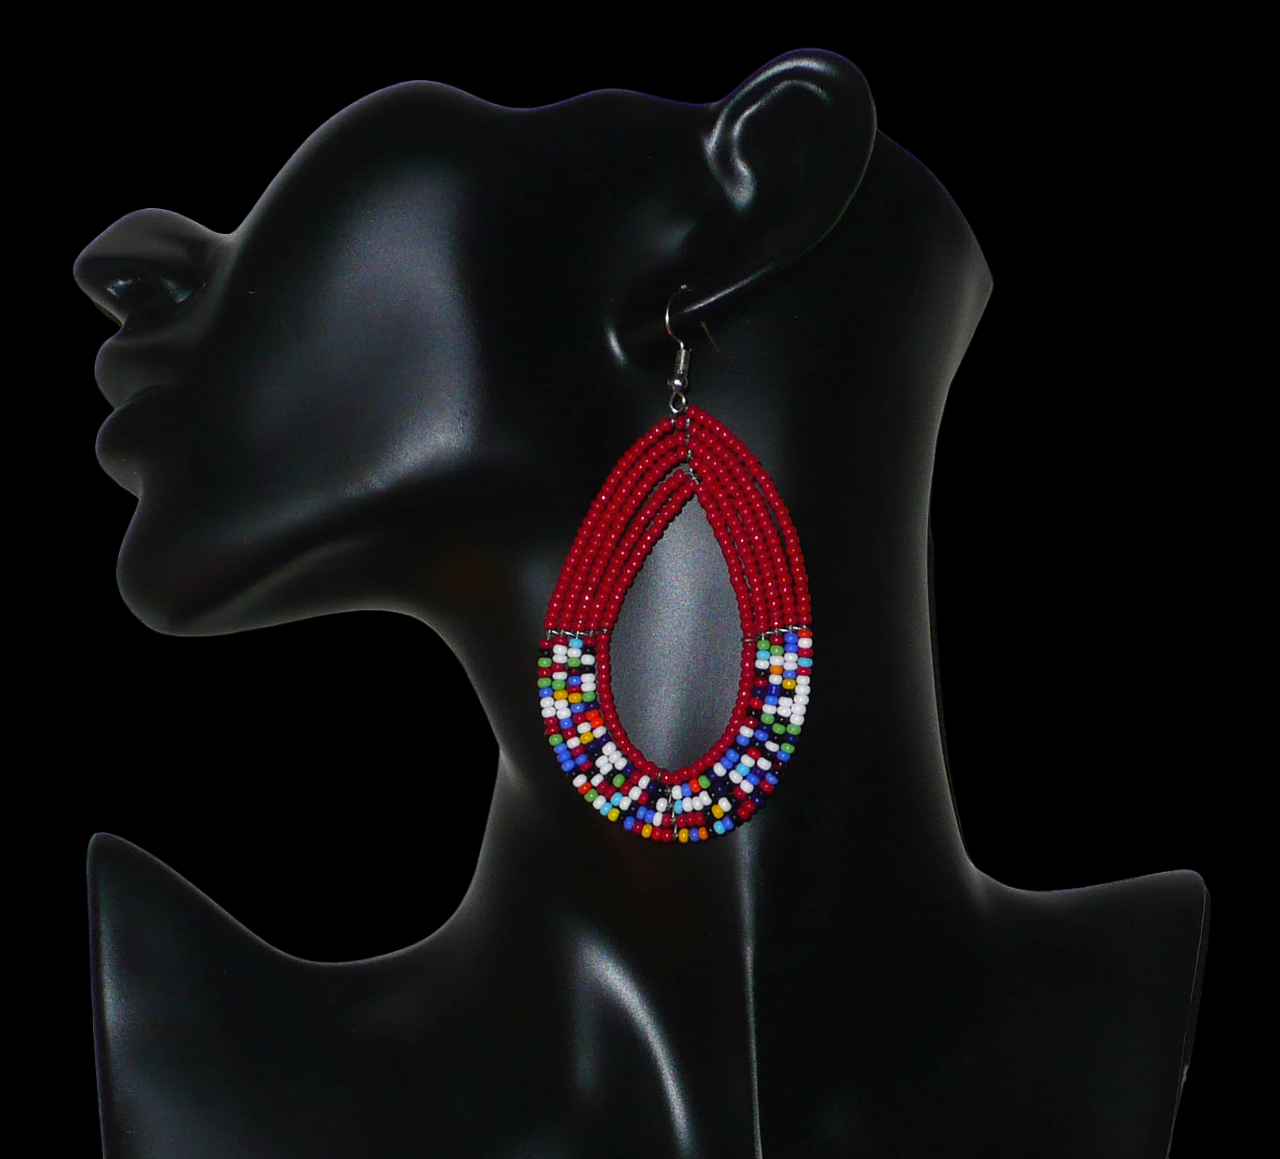 Longues boucles d'oreilles pendantes composées de perles de rocailles rouges et multicolores enfilées sur cinq rangs de fils de fer montés en forme de gouttes. Elles mesurent 9 cm de long et 4,5 cm de large et se portent avec des crochets sur des oreilles percées.